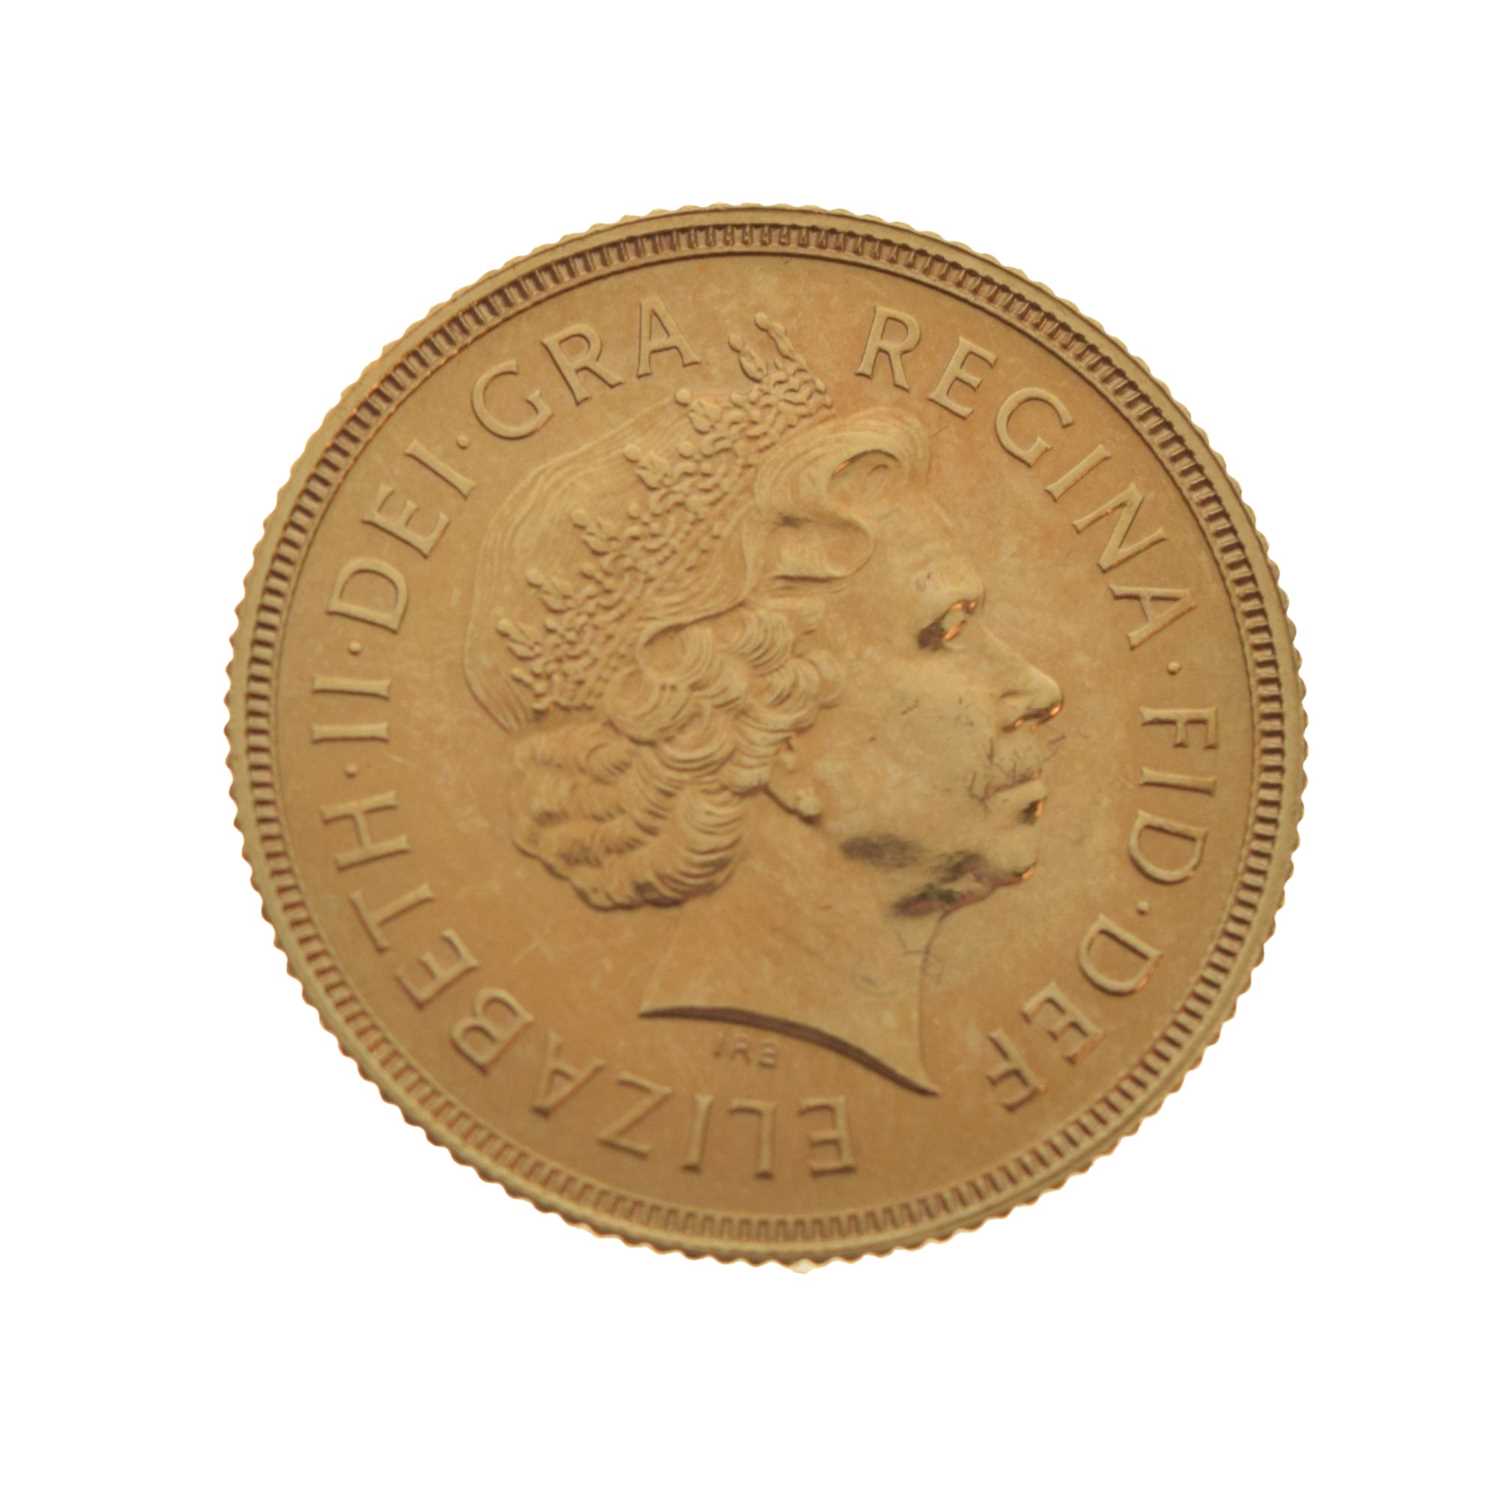 Elizabeth II gold sovereign, 1999 - Image 2 of 4